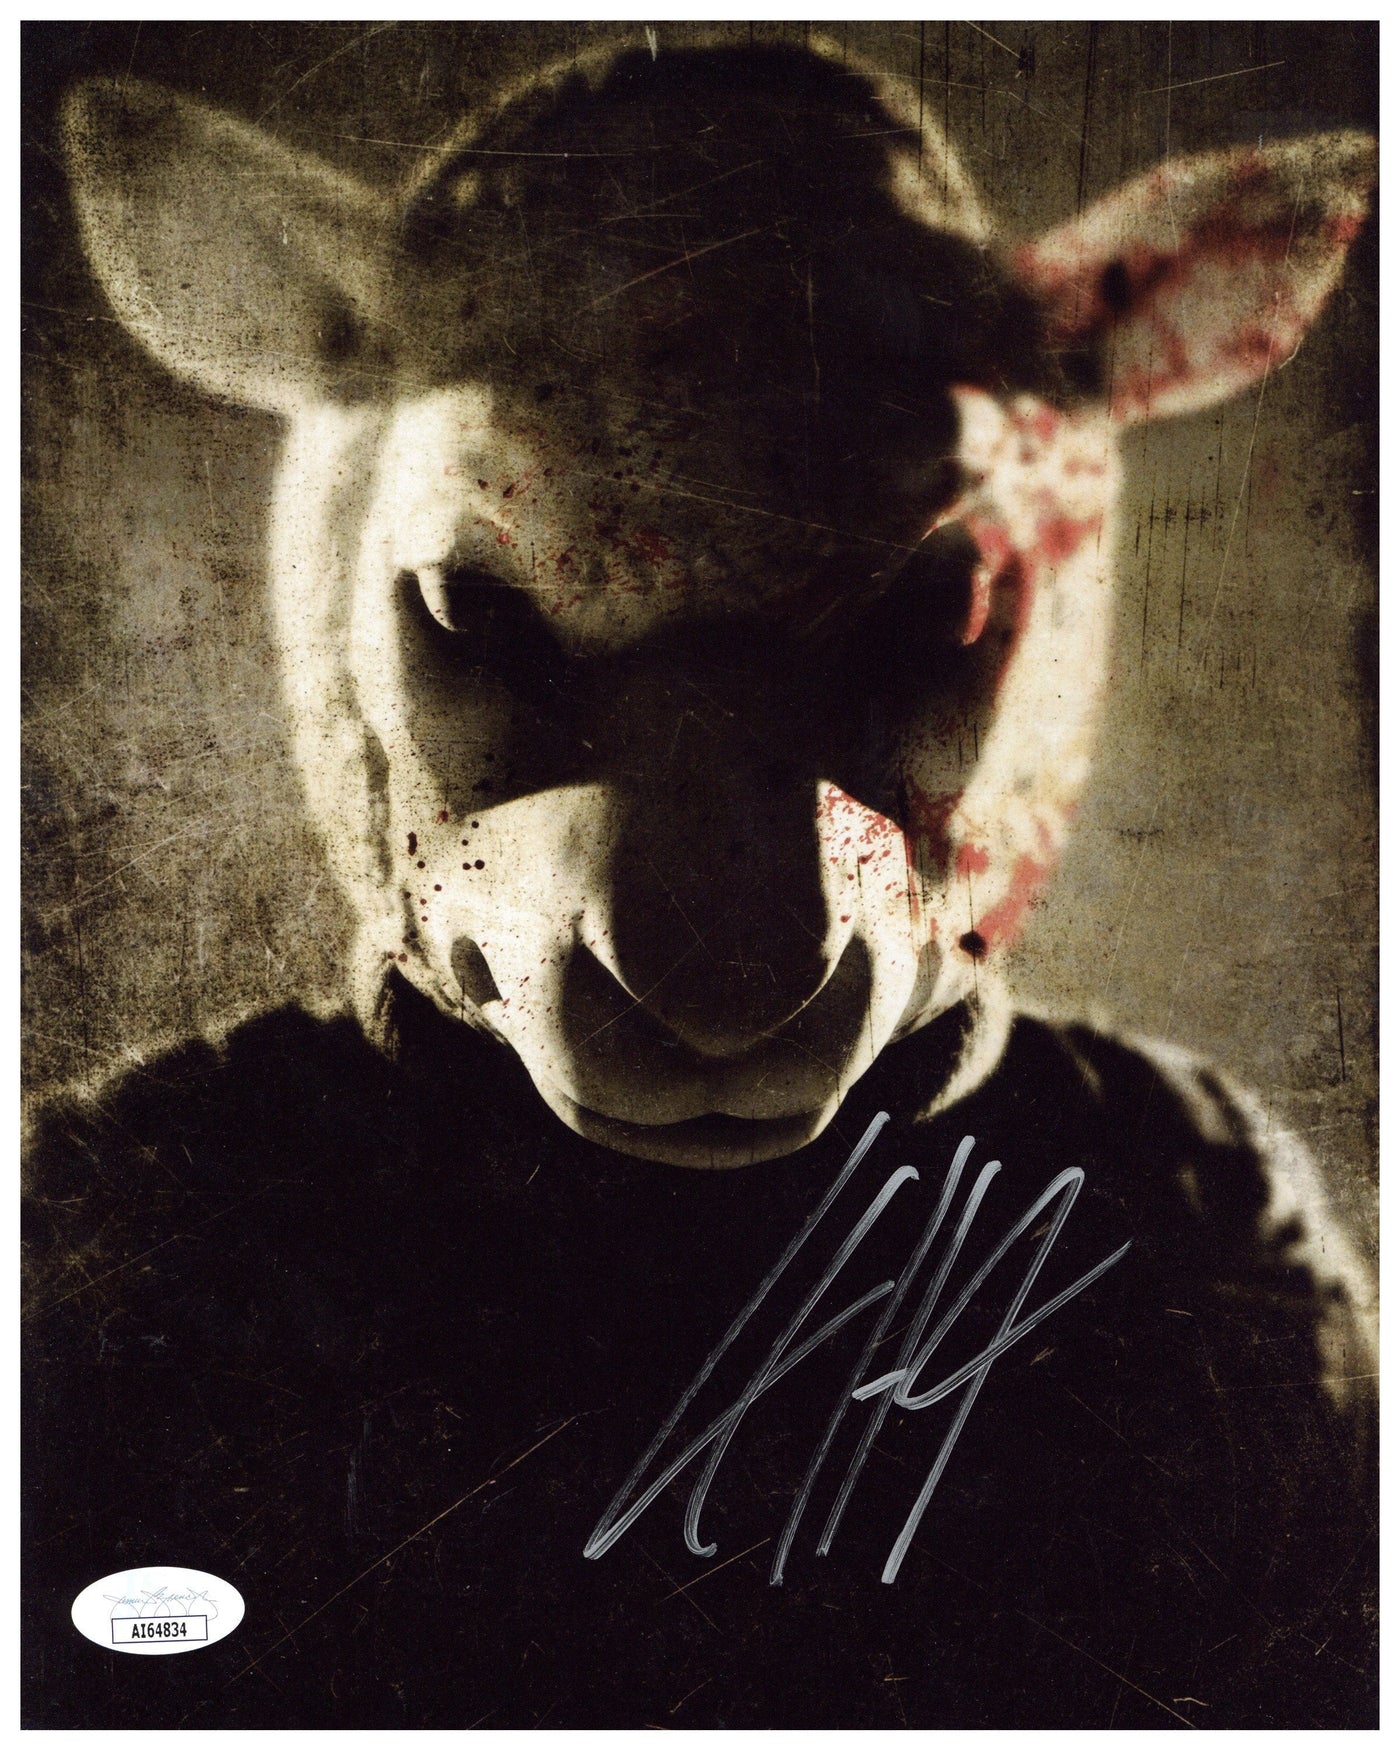 L.C. Holt Autographed 8x10 Photo You're Next Horror Film Signed JSA COA